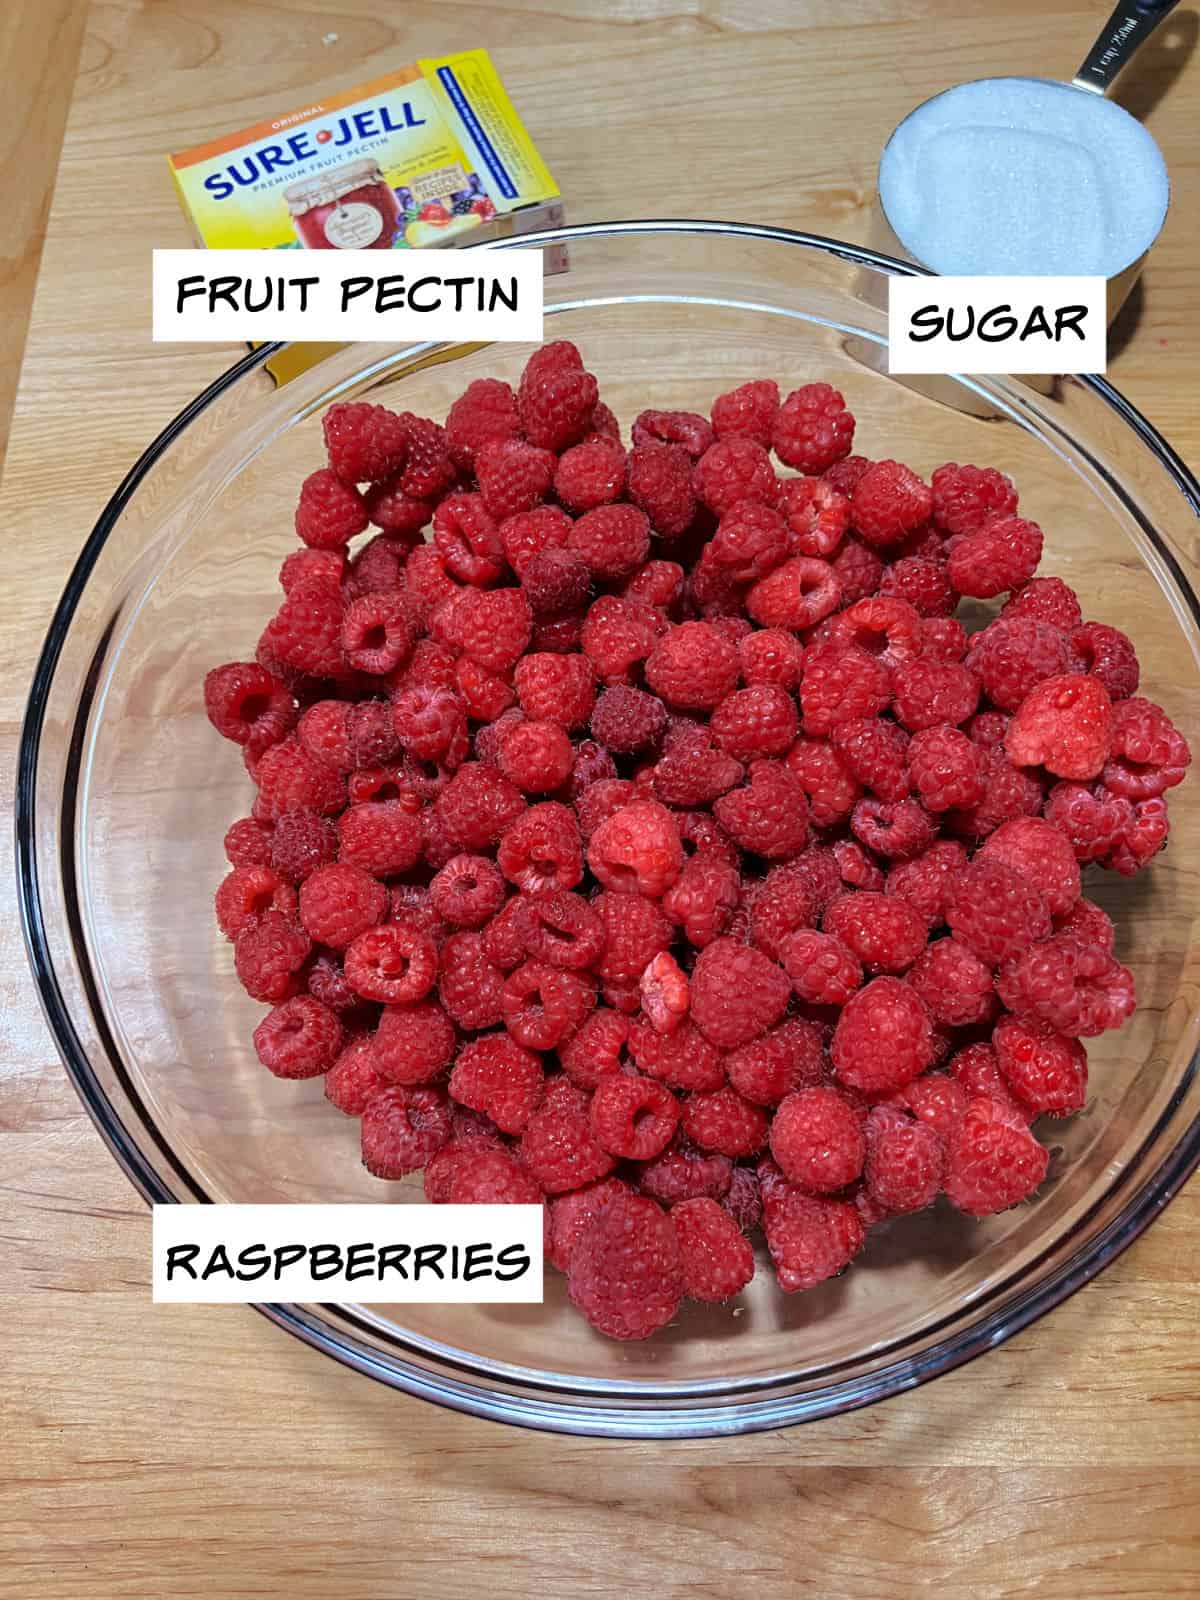 raspberries, sugar and pectin ingredients.